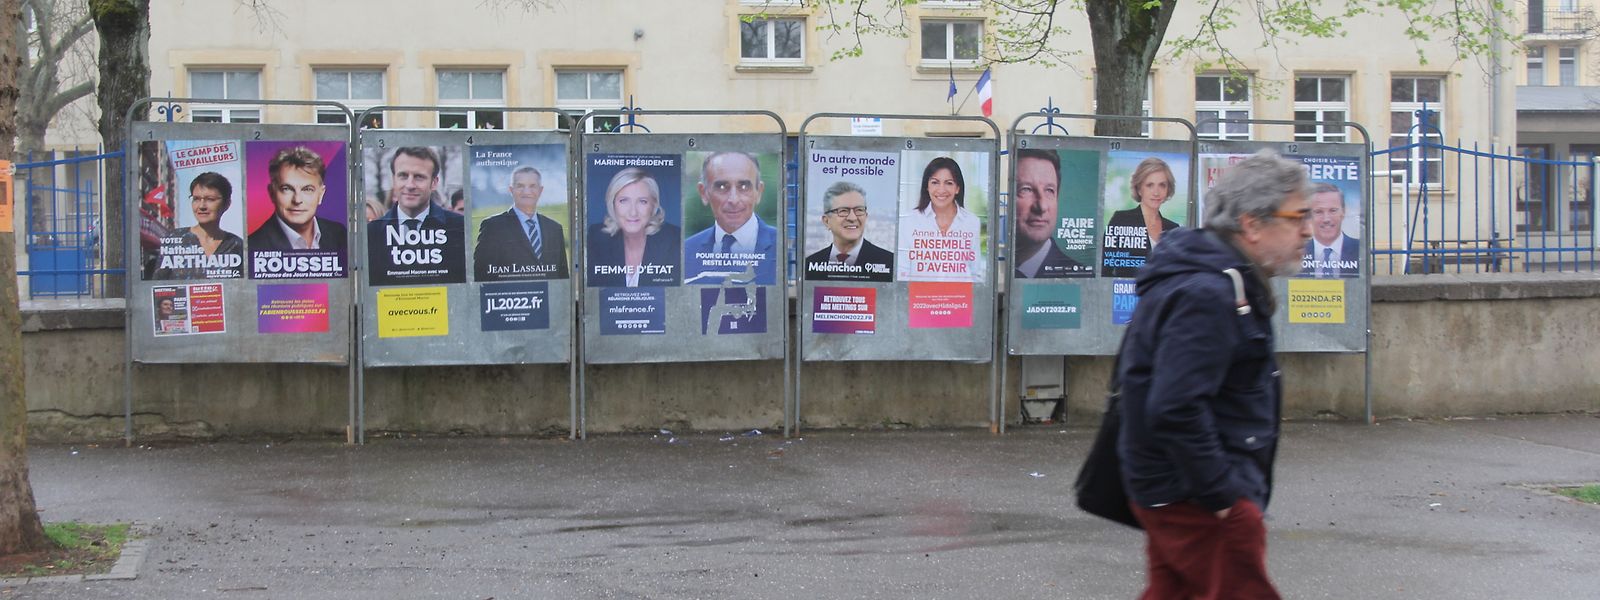 Sur le marché de la place Saint-Livier à Metz, seules les affiches de la campagne semblent rappeler la réelle pluralité politique de l'élection présidentielle.